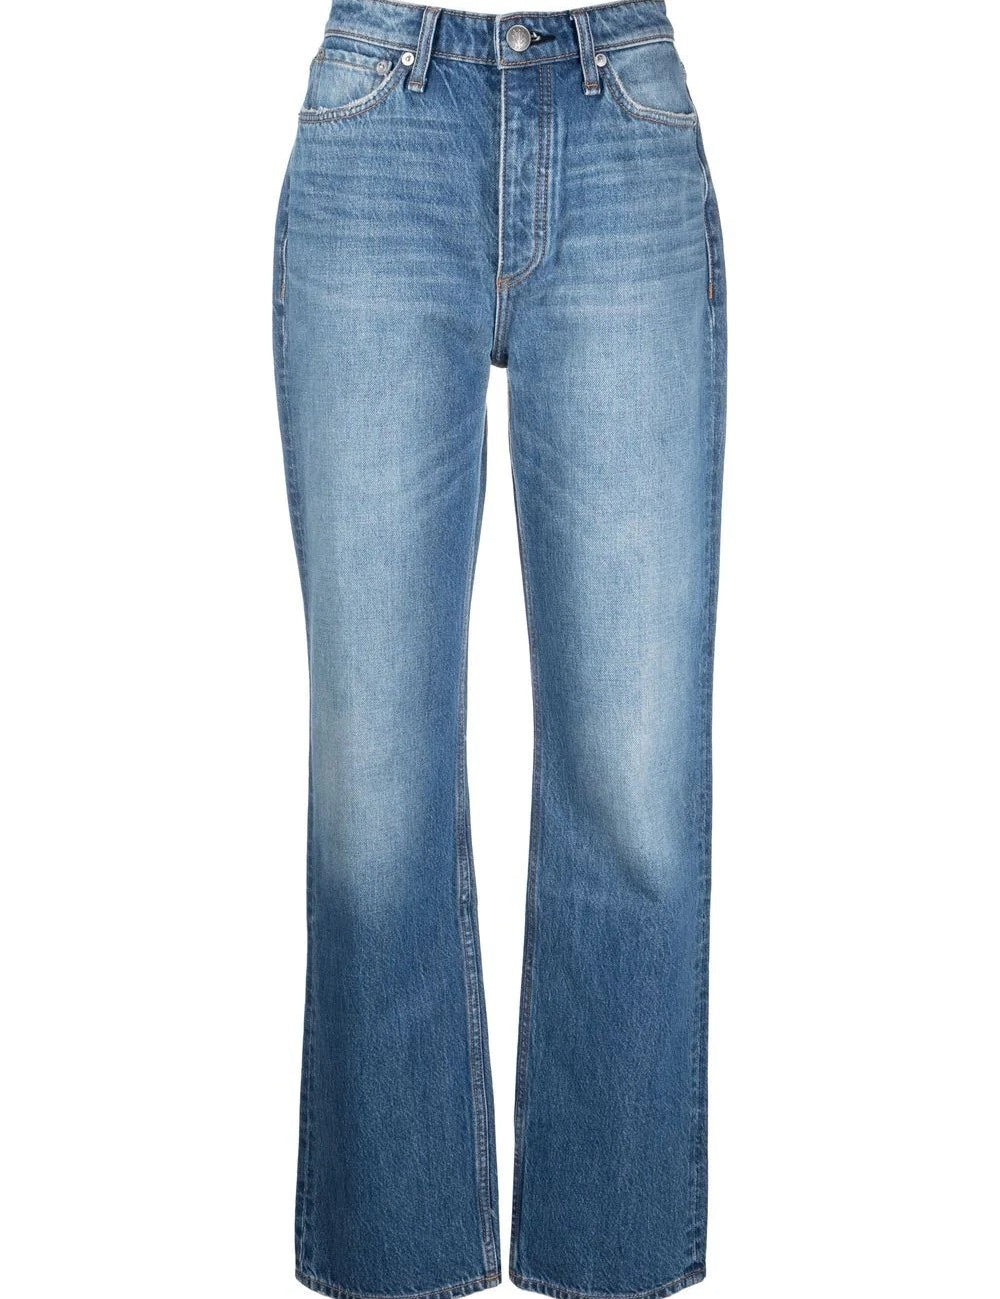 alex-high-rise-jeans.jpg